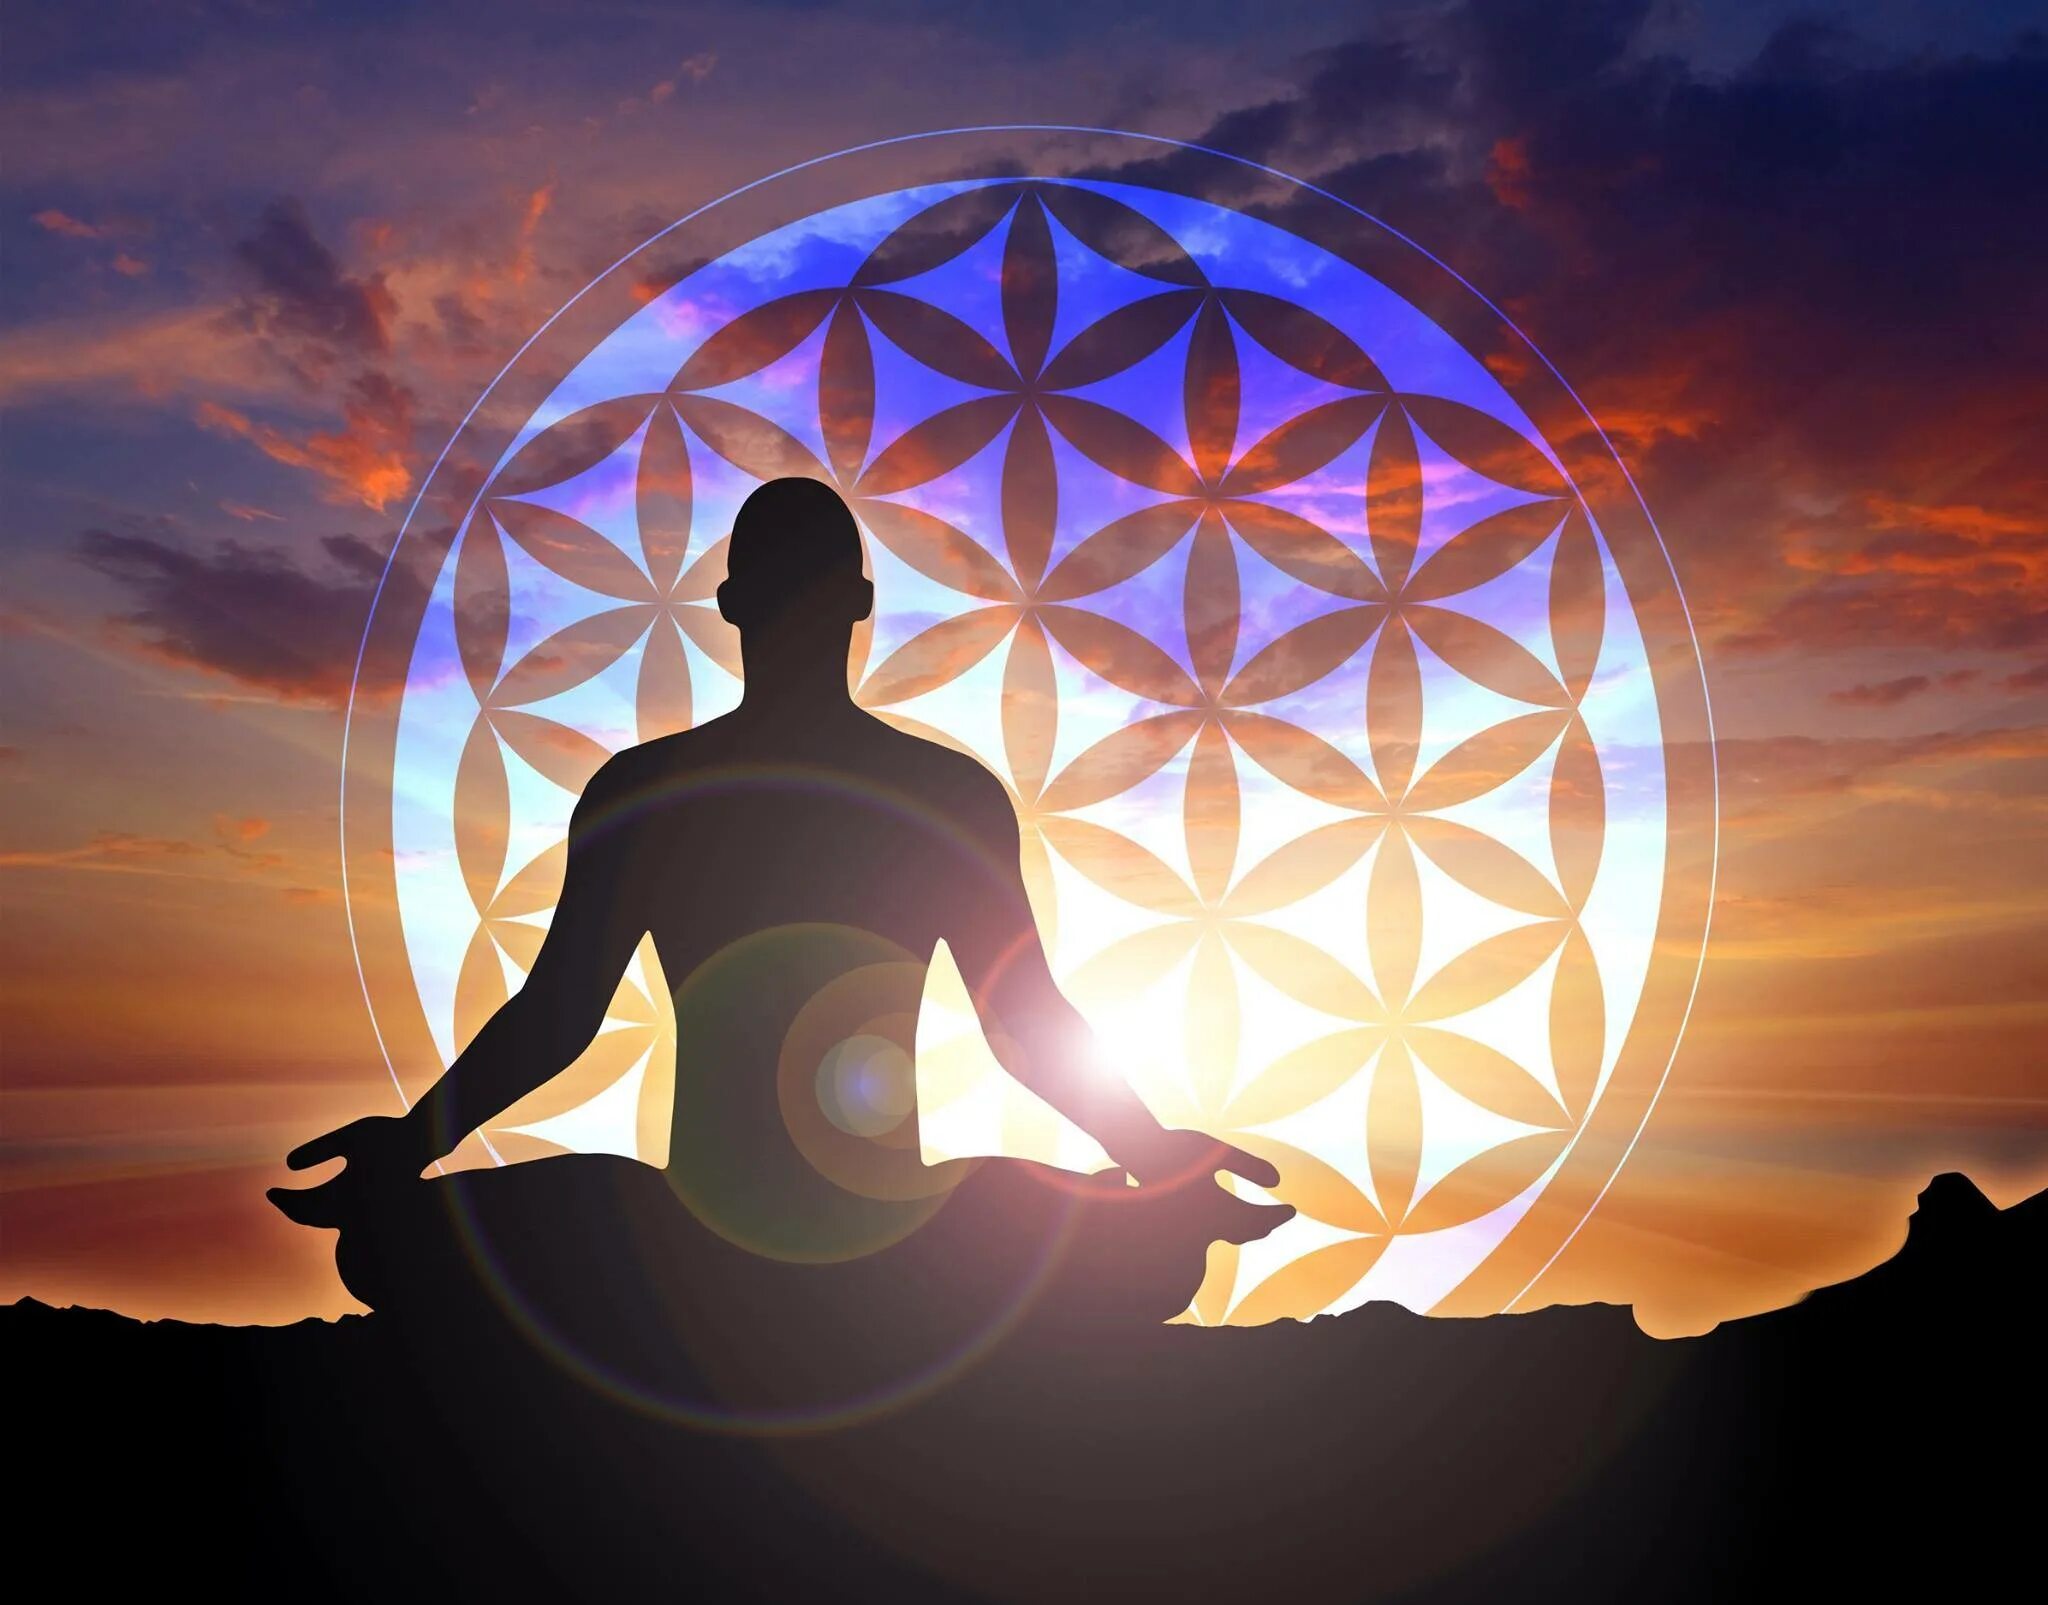 Дух исцеление. Медитация Муладхара чакра. Медитация осознанности. Осознанность чакры. Душевного равновесия и гармонии.